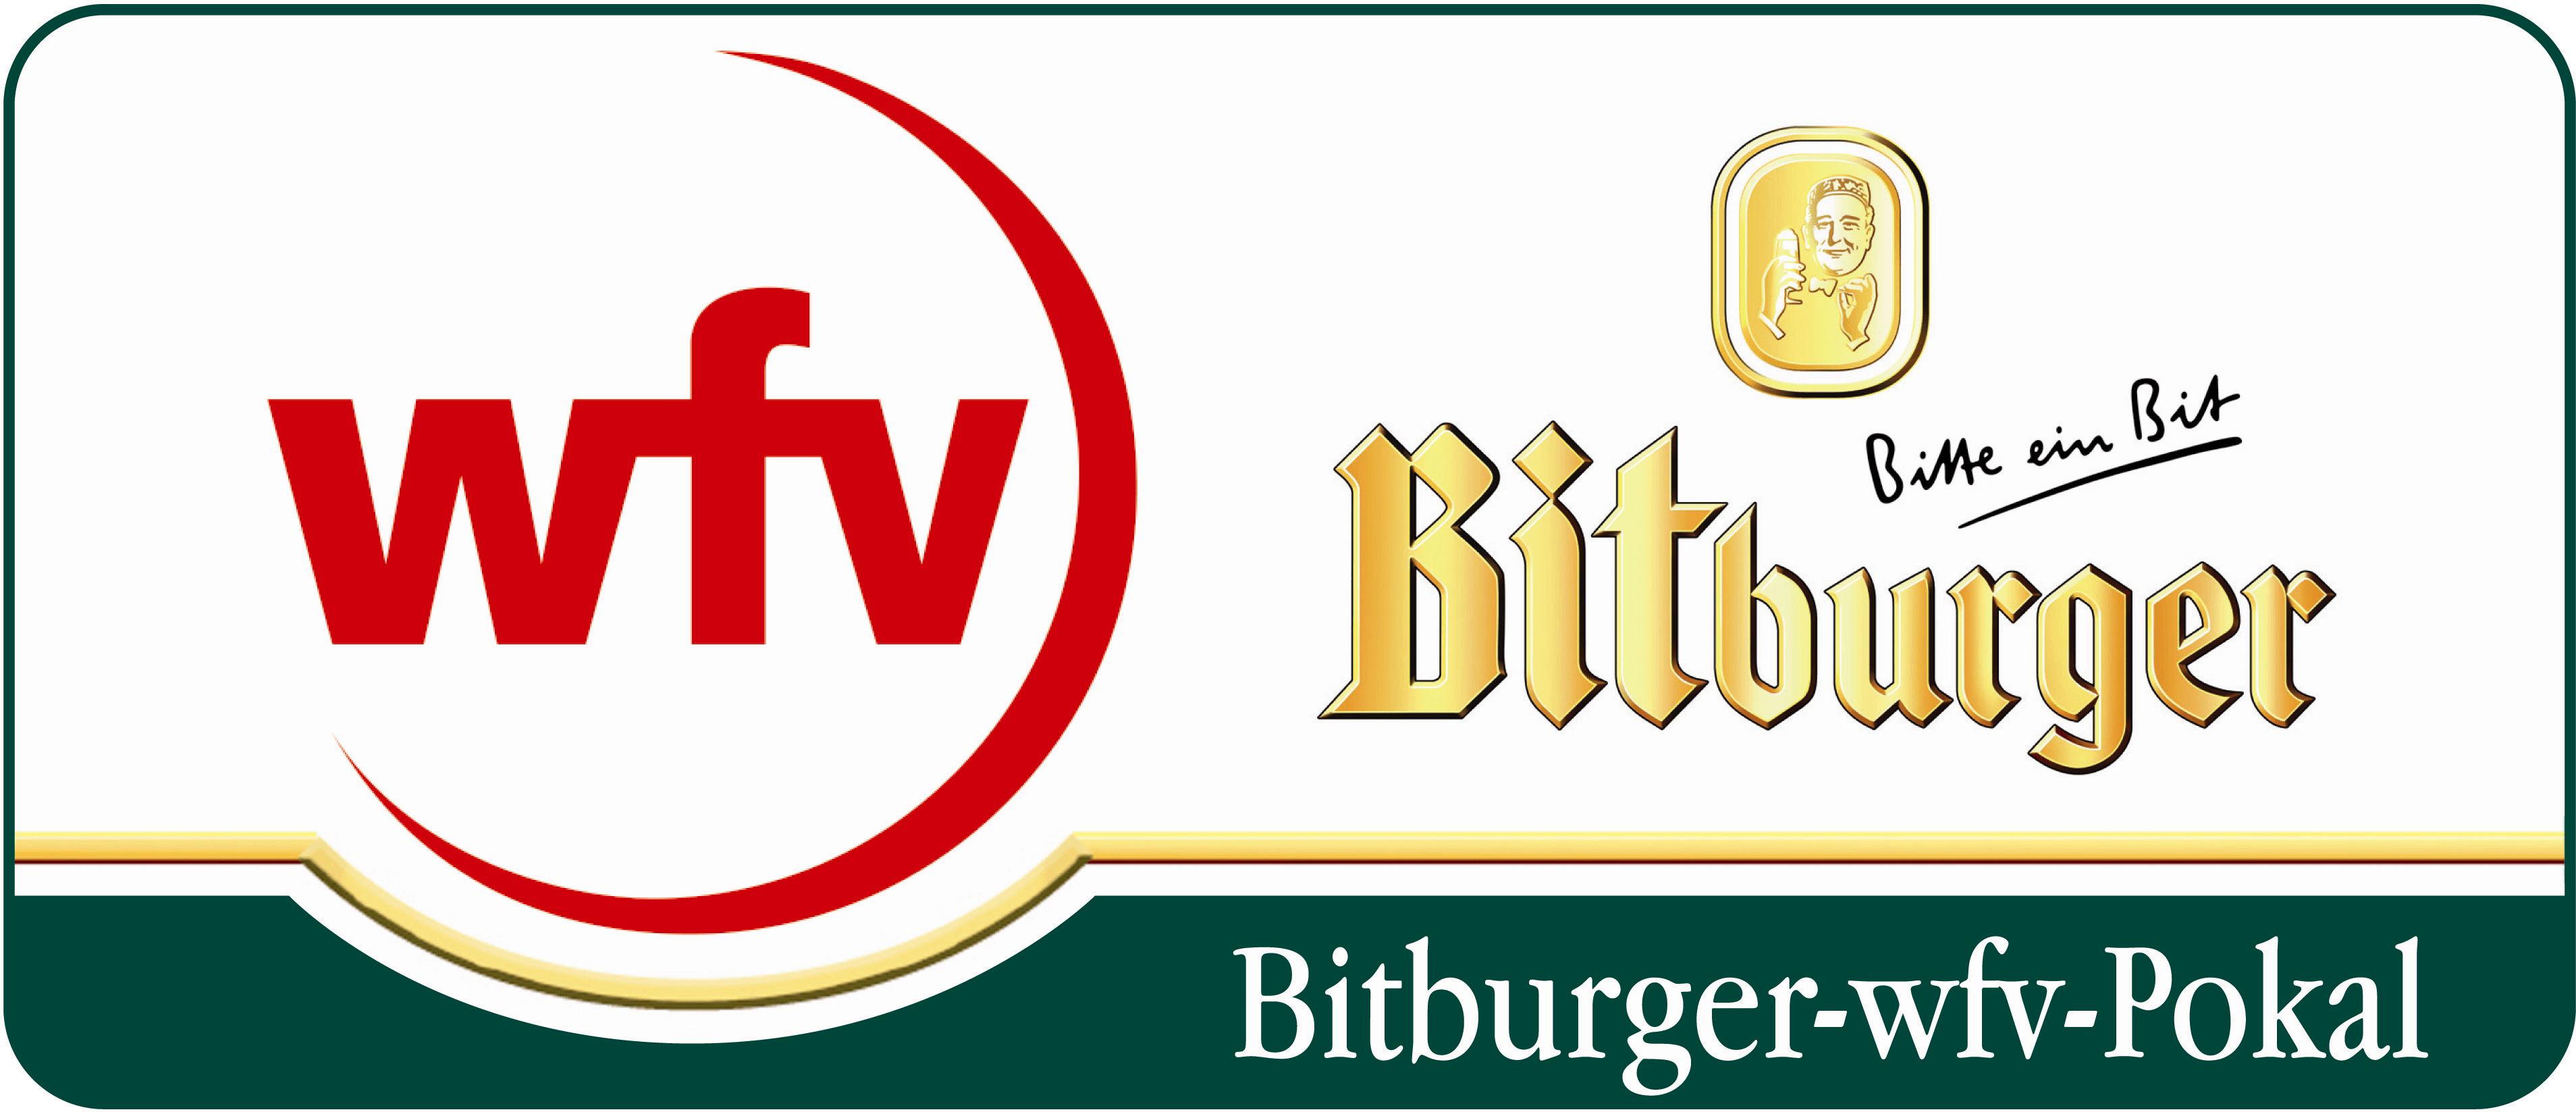 Bitburger Logo - Bitburger Wfv Pokal.png